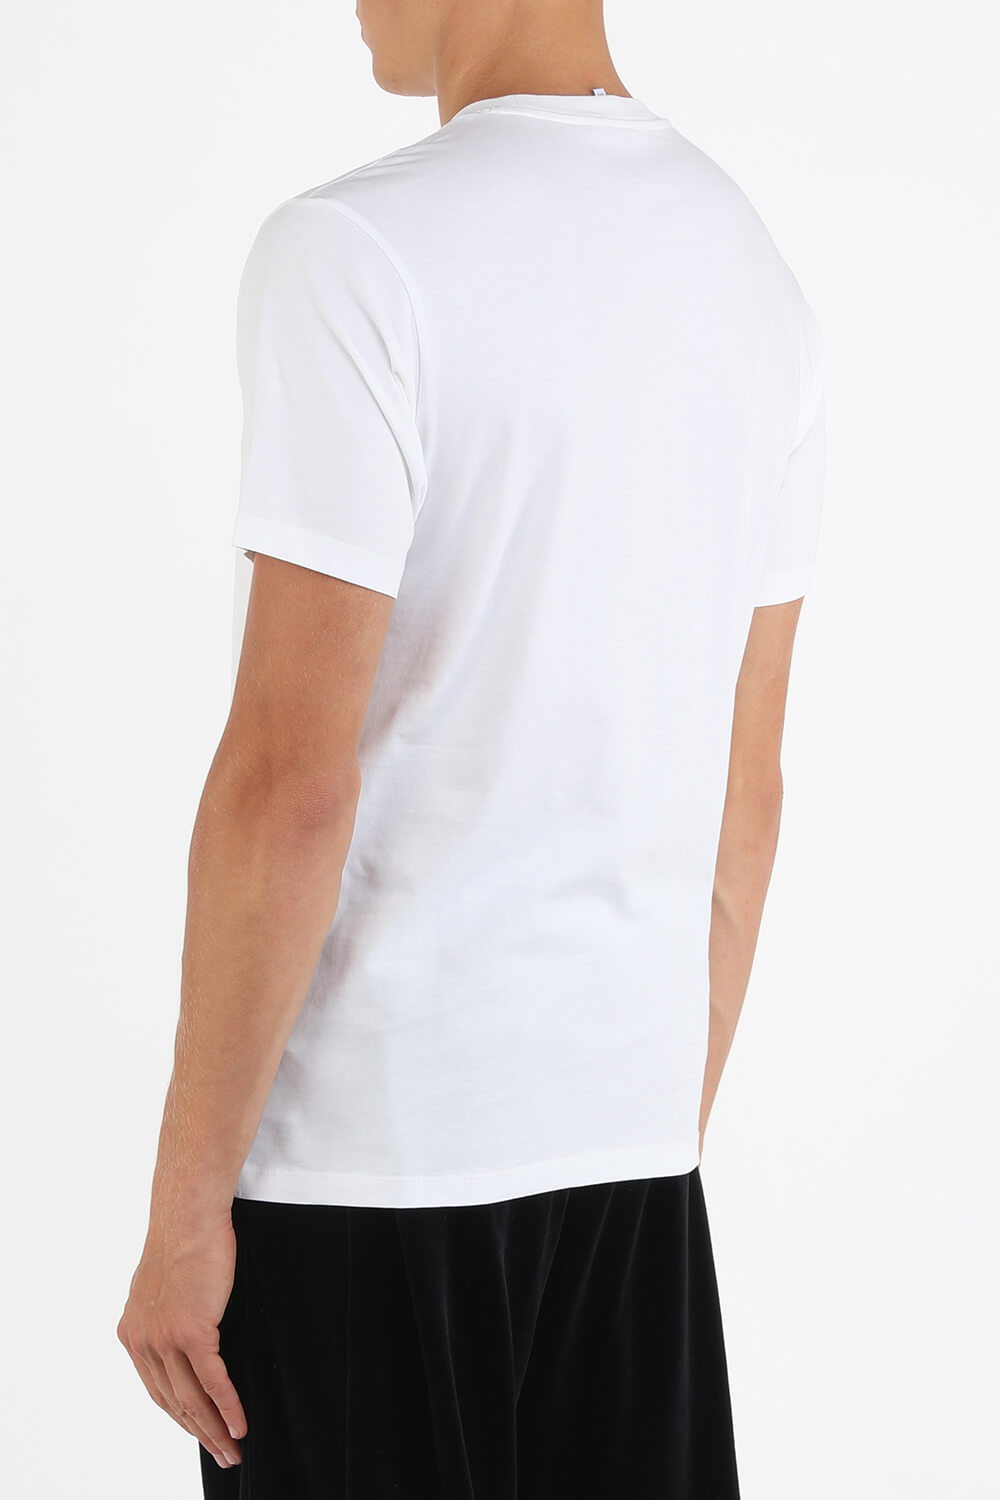 חולצת לוגו לבנה עם הדפס נמר KENZO